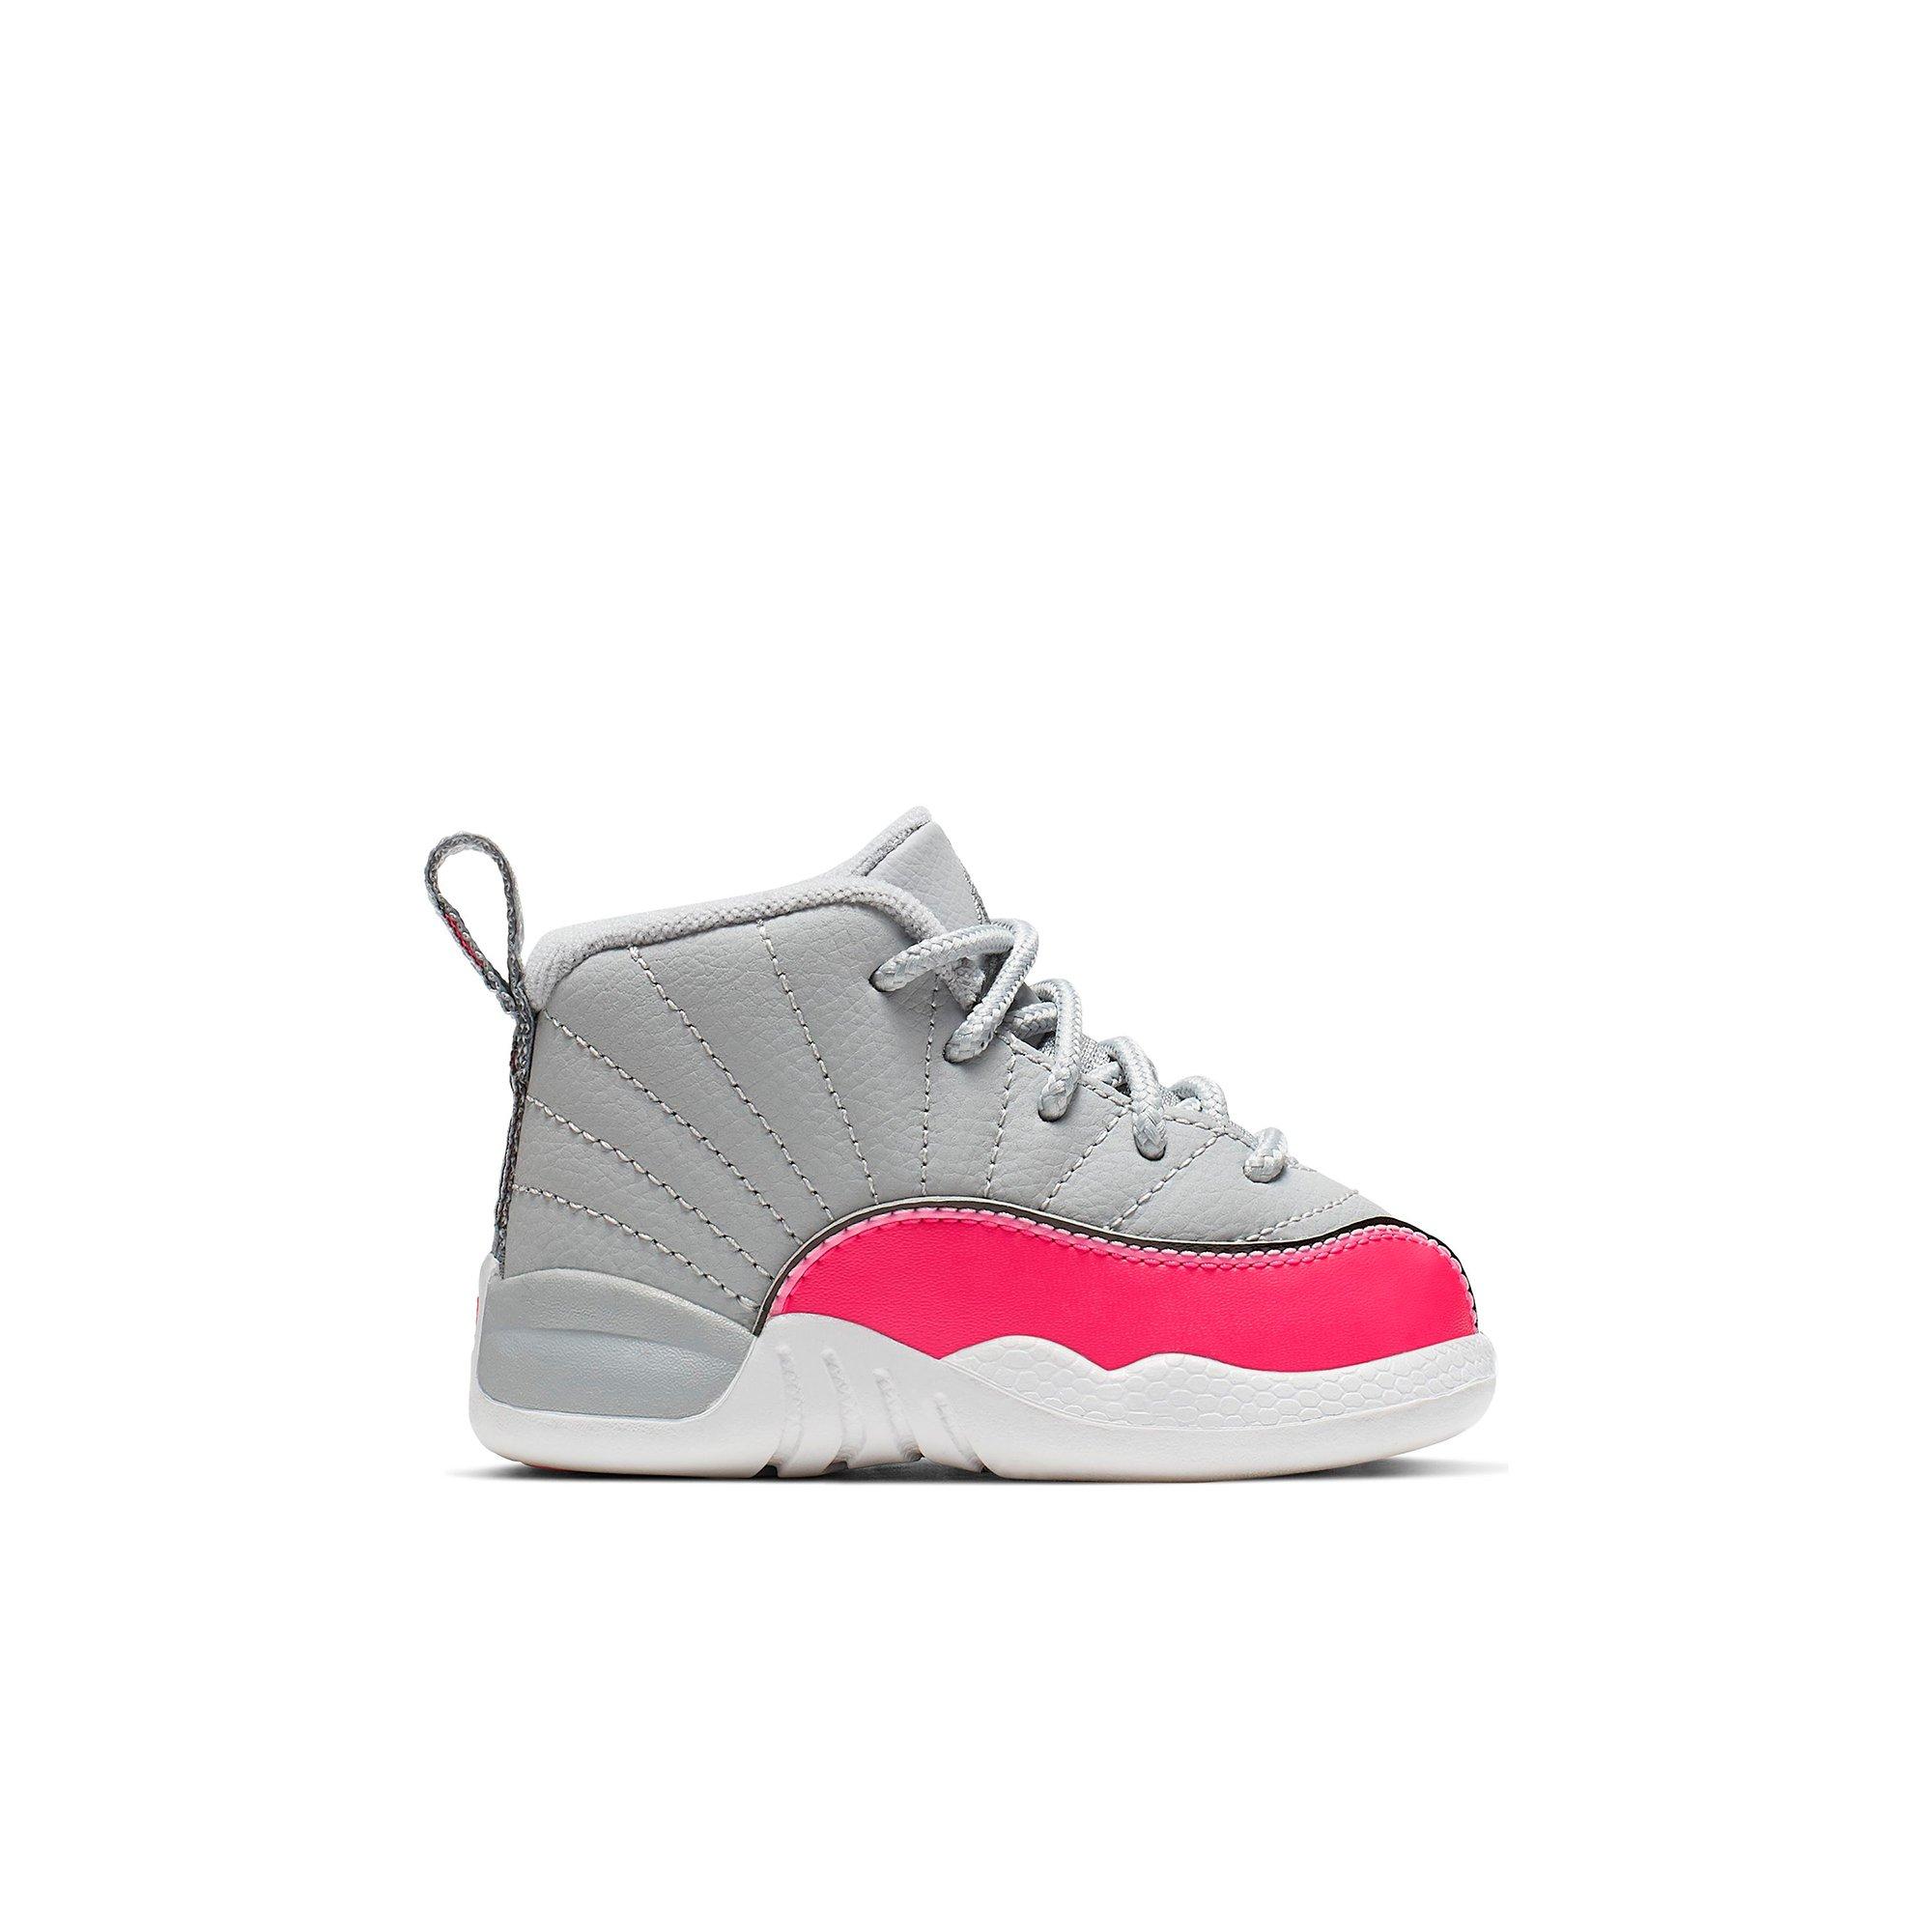 pink baby jordan shoes